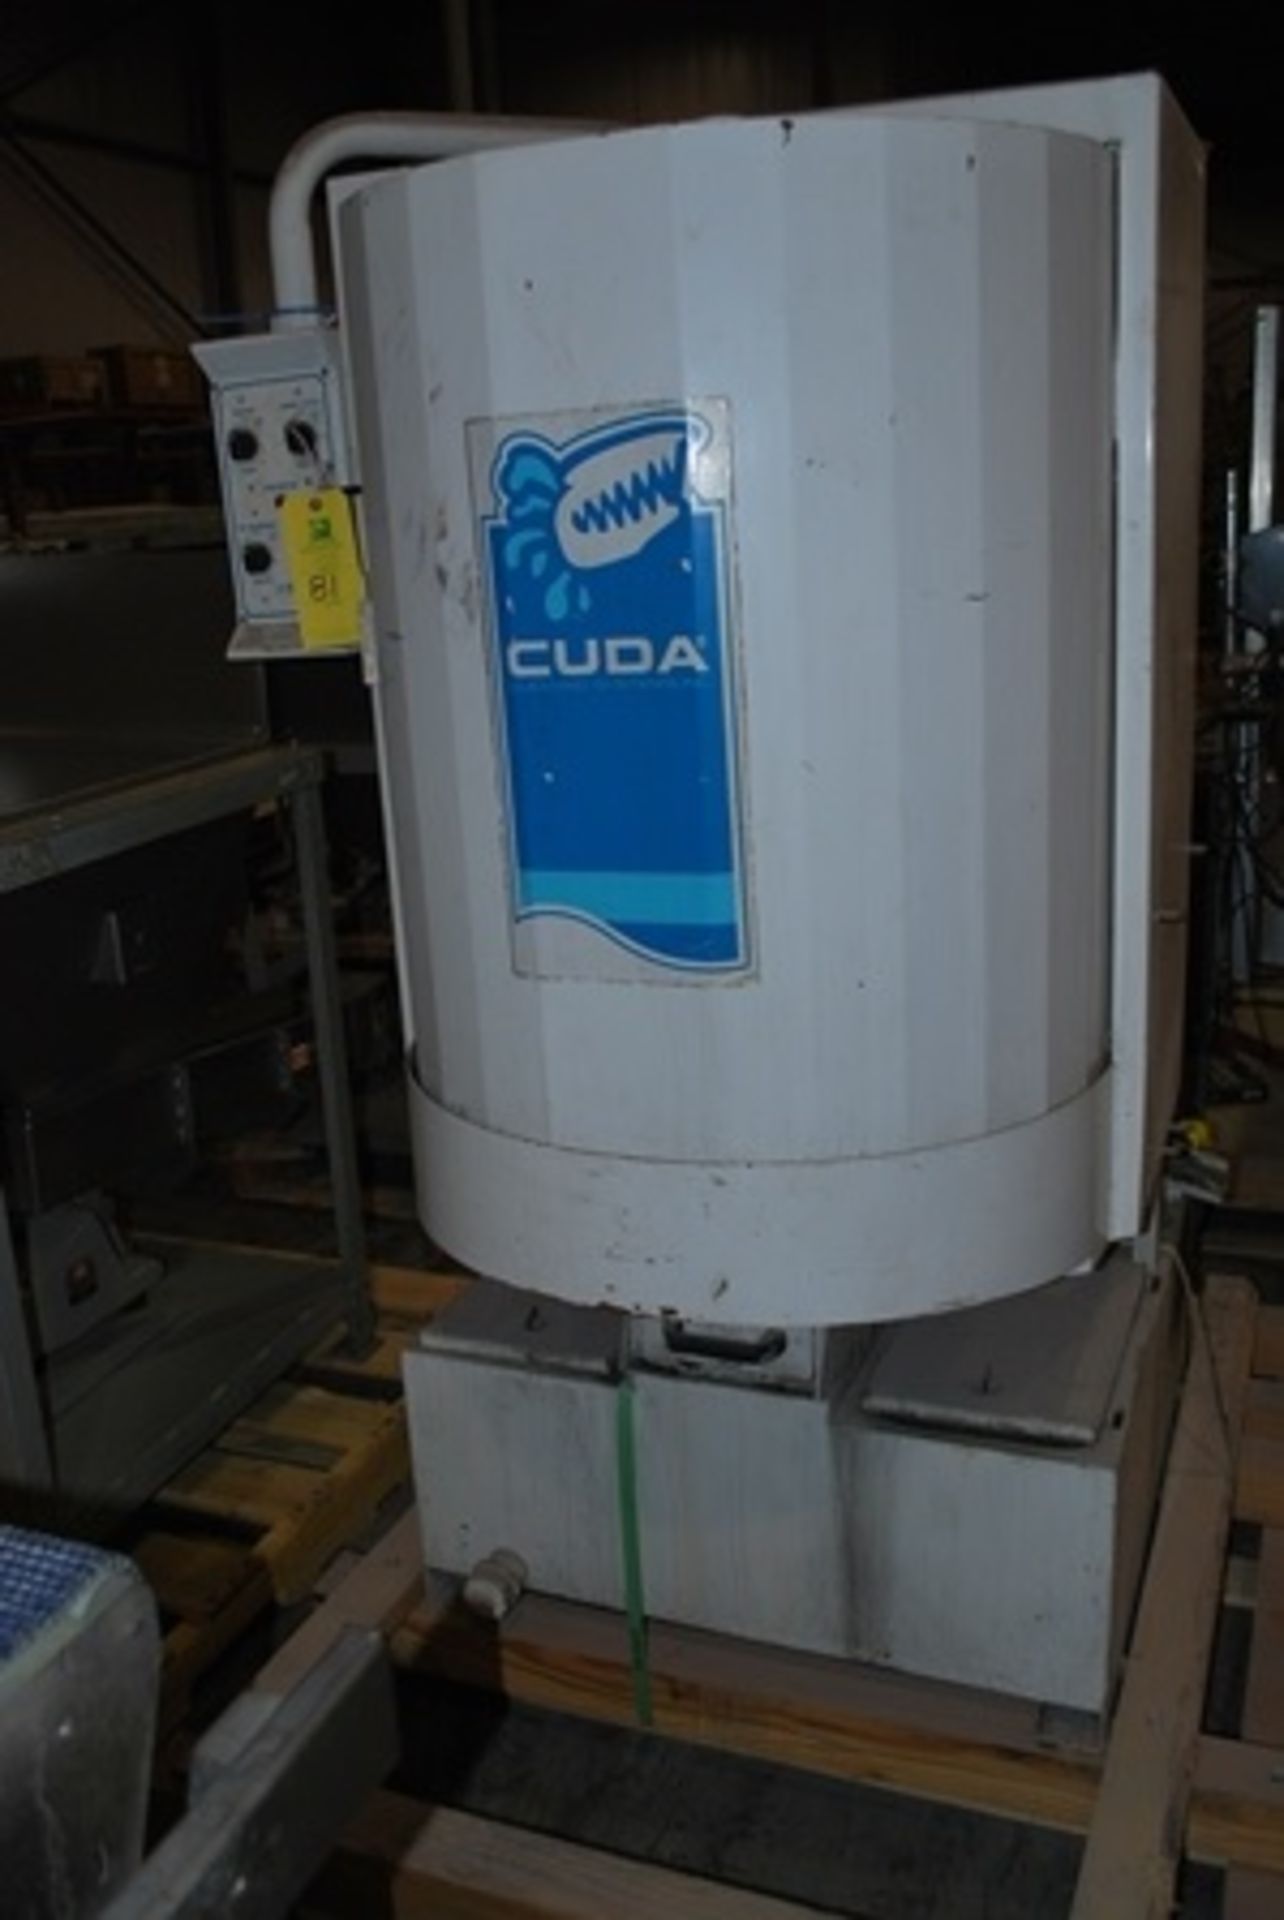 Cuda Parts Washer Model H20-2530 S/N 1005088